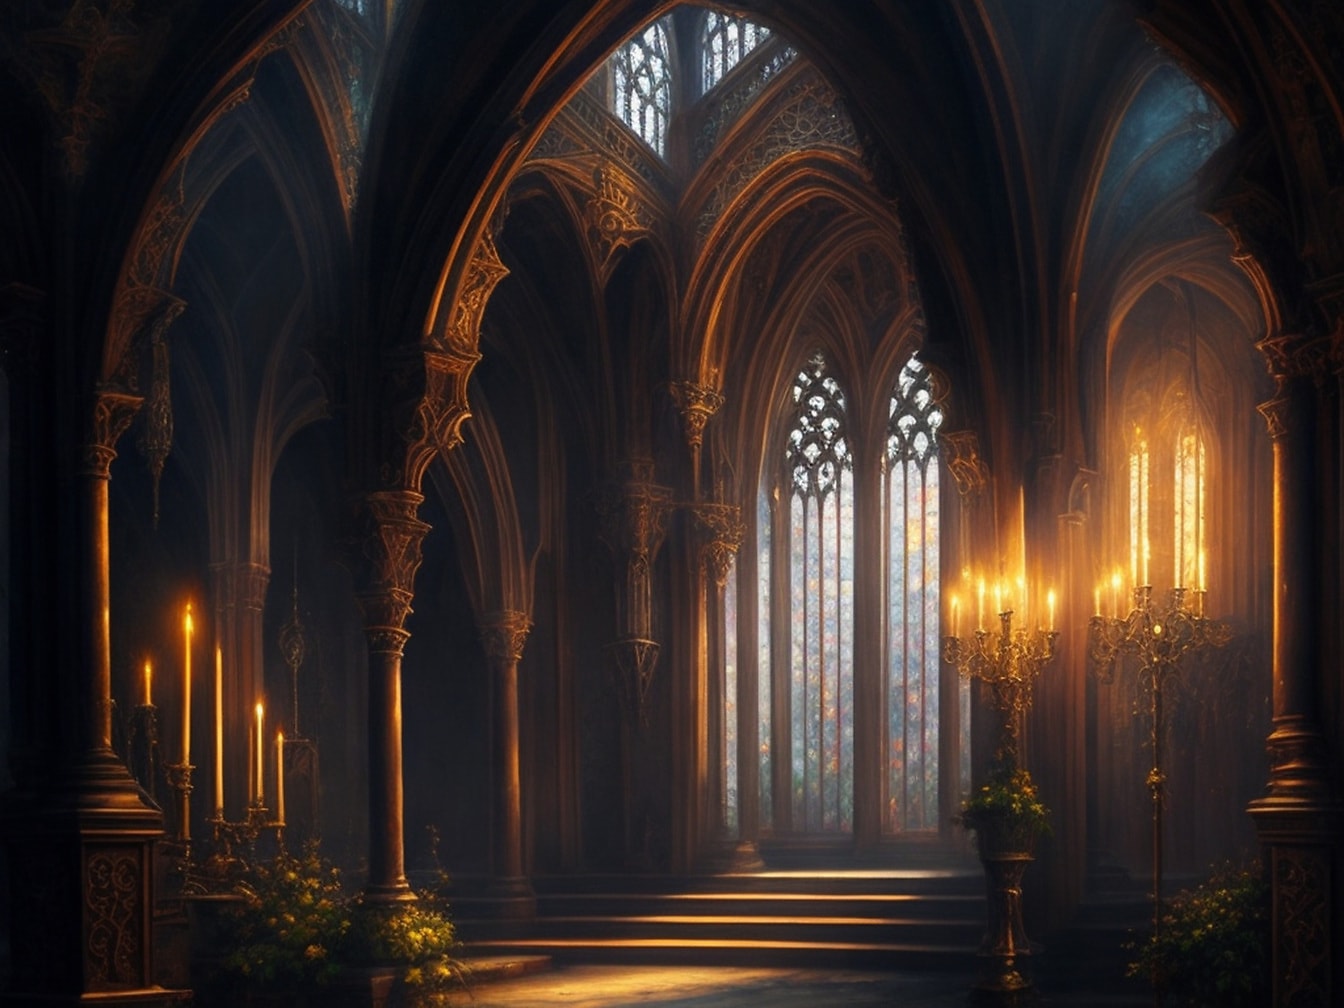 Interiér gotické katedrály s ilustrací při svíčkách